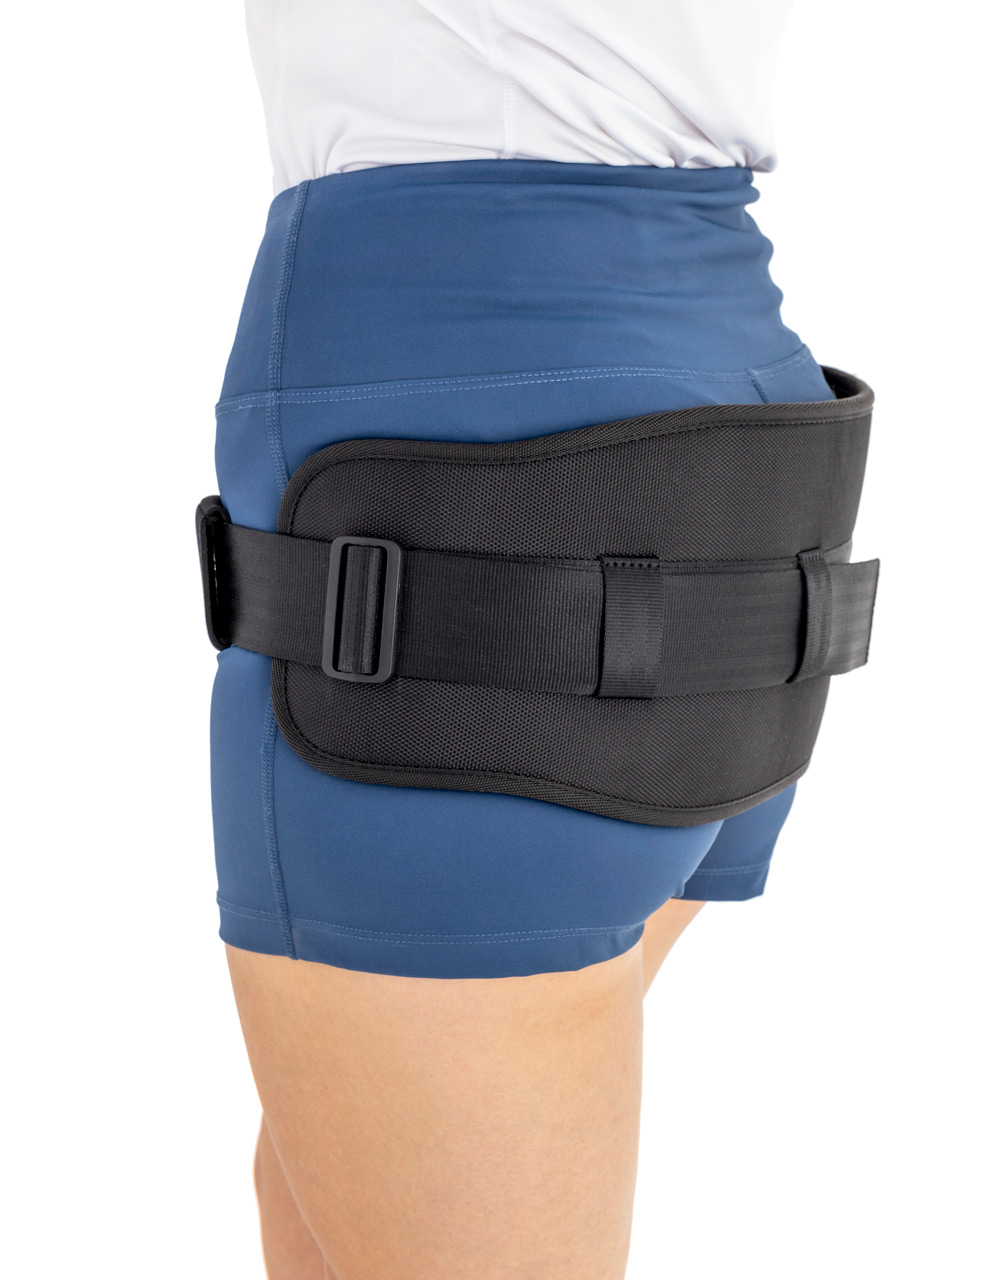 M)Mxtech Hip Brace Pain Relief Nylon Soft Pelvic Support Belt For